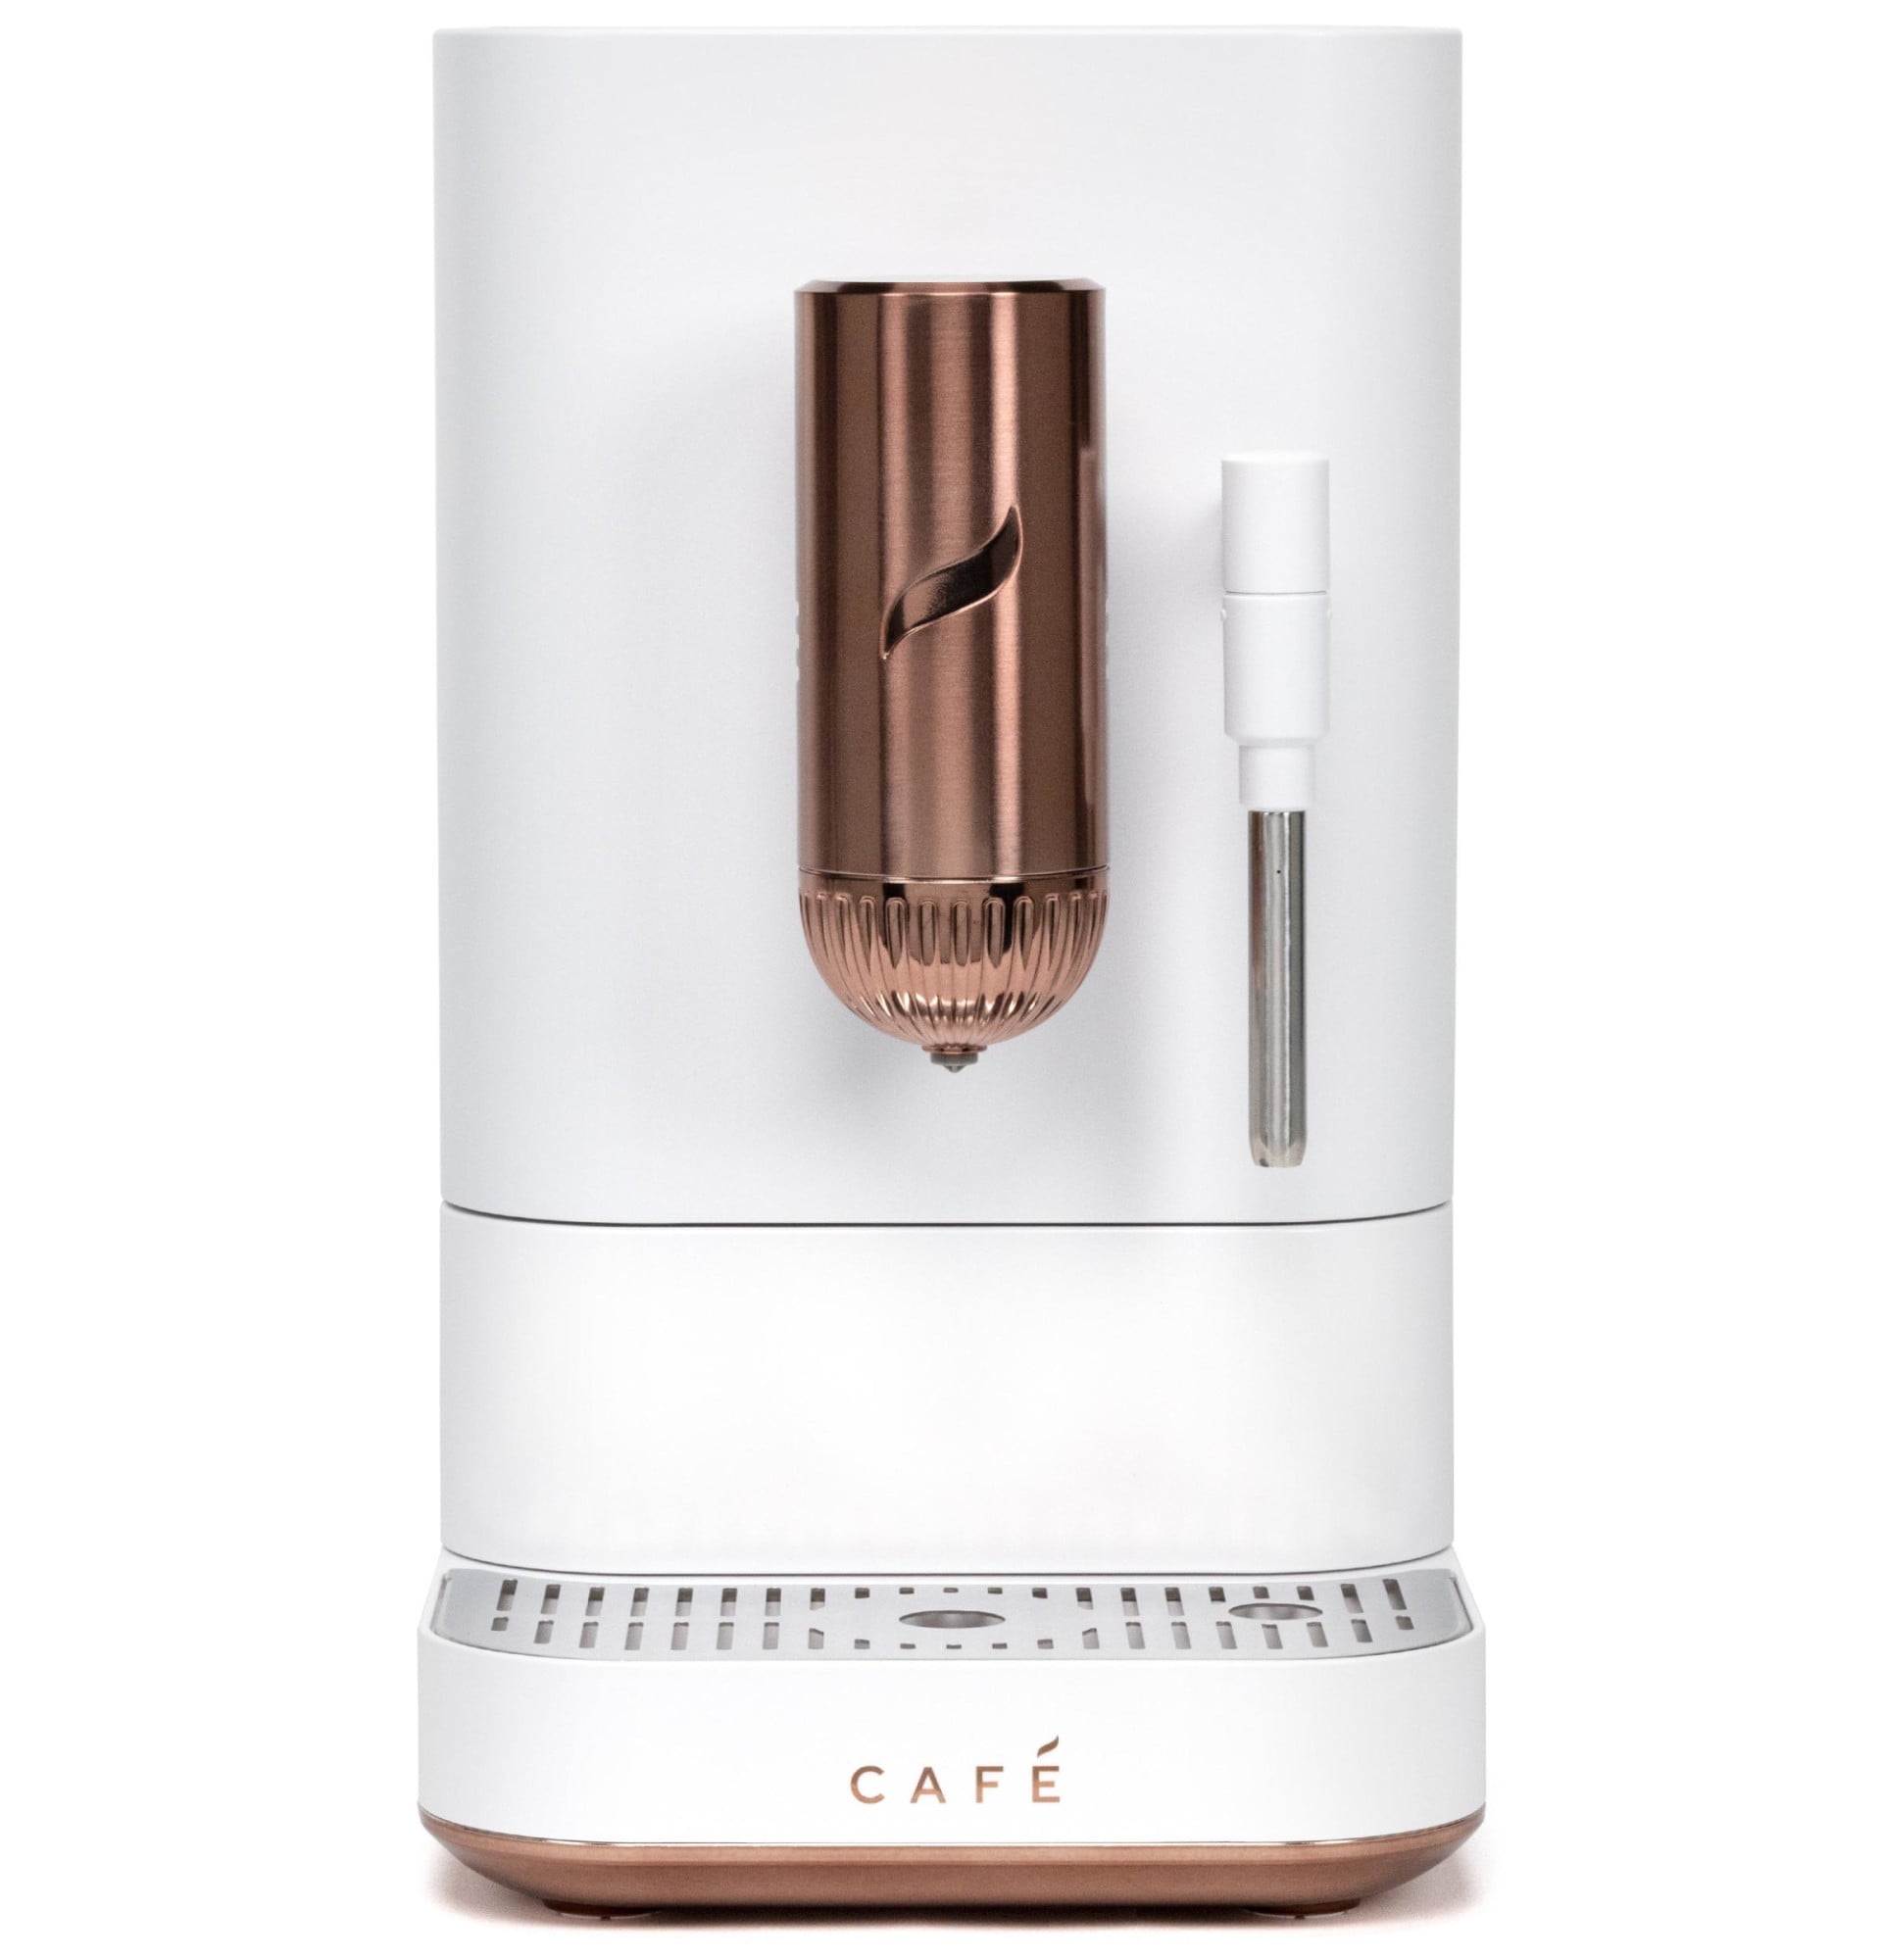  Capresso 303.01 4-Cup Espresso and Cappuccino Machine Black  13.25 x 7.5 x 9.75: Combination Coffee Espresso Machines: Home & Kitchen